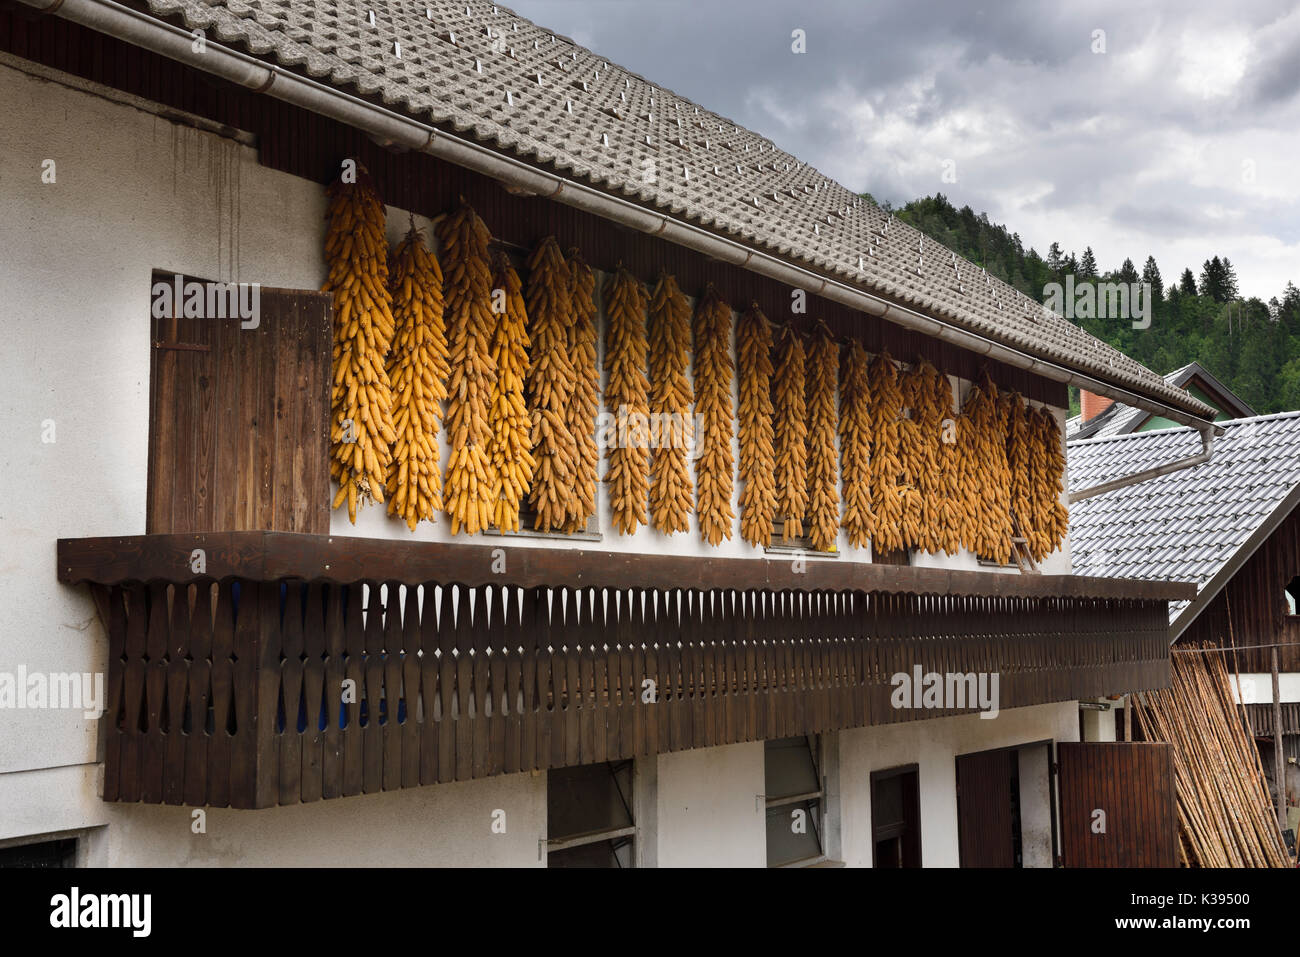 Maiskolben hängen unter dem dachvorsprung von einem Stein Fliesen Dach Haus mit Balkon in Selo Dorf in Bled Slowenien zu trocknen Stockfoto